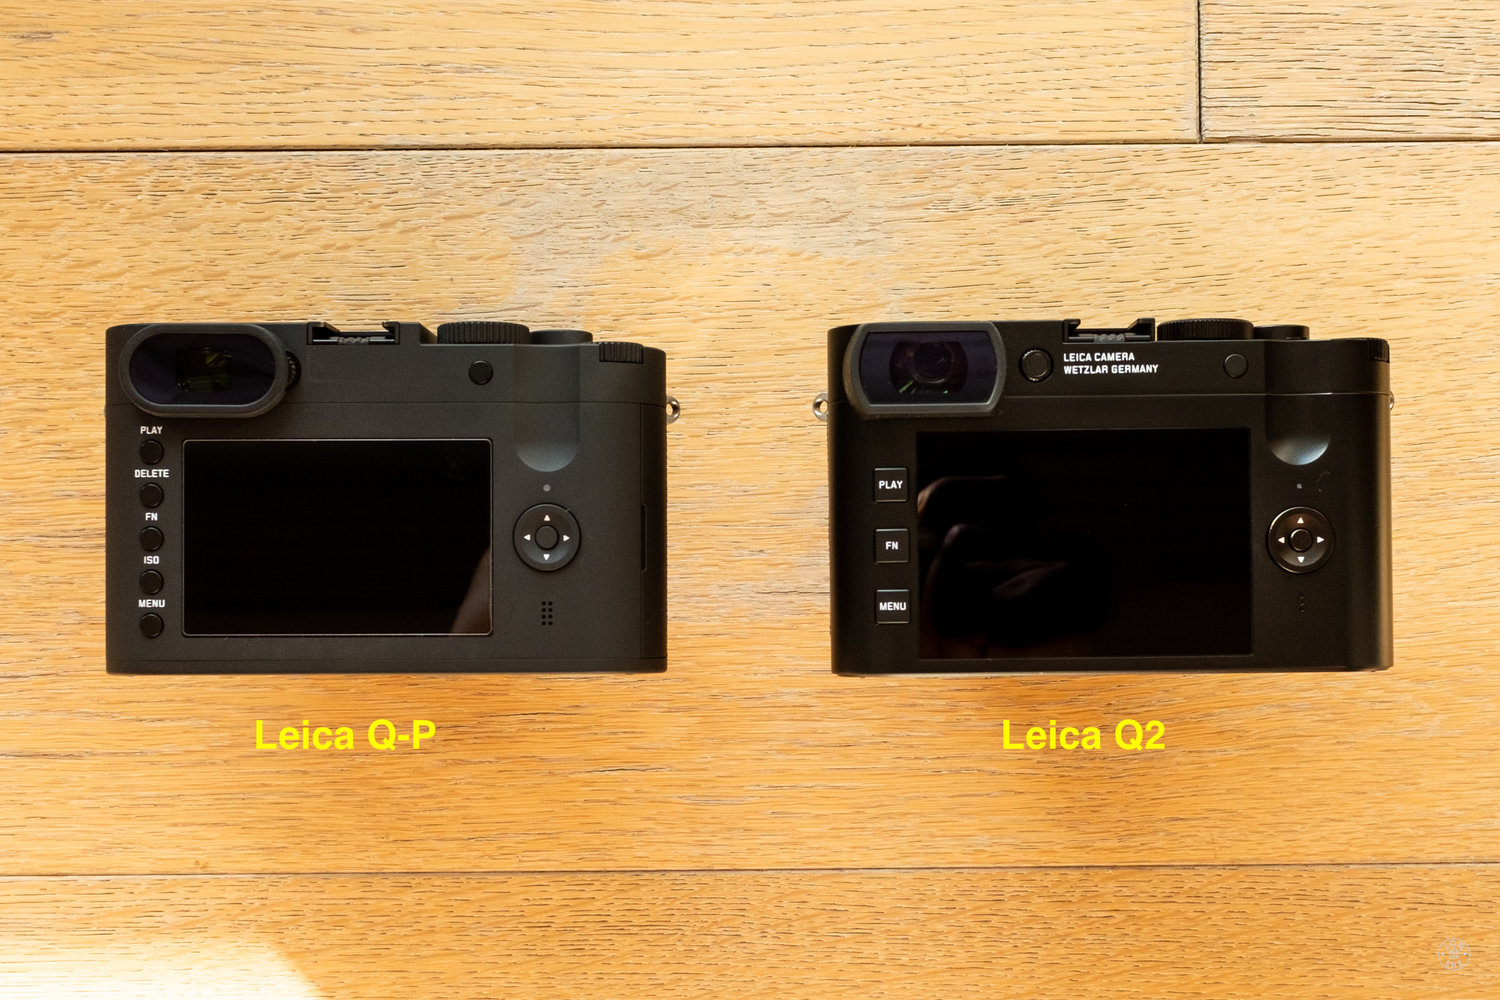 Leica Q2 camera officially announced - Leica Rumors